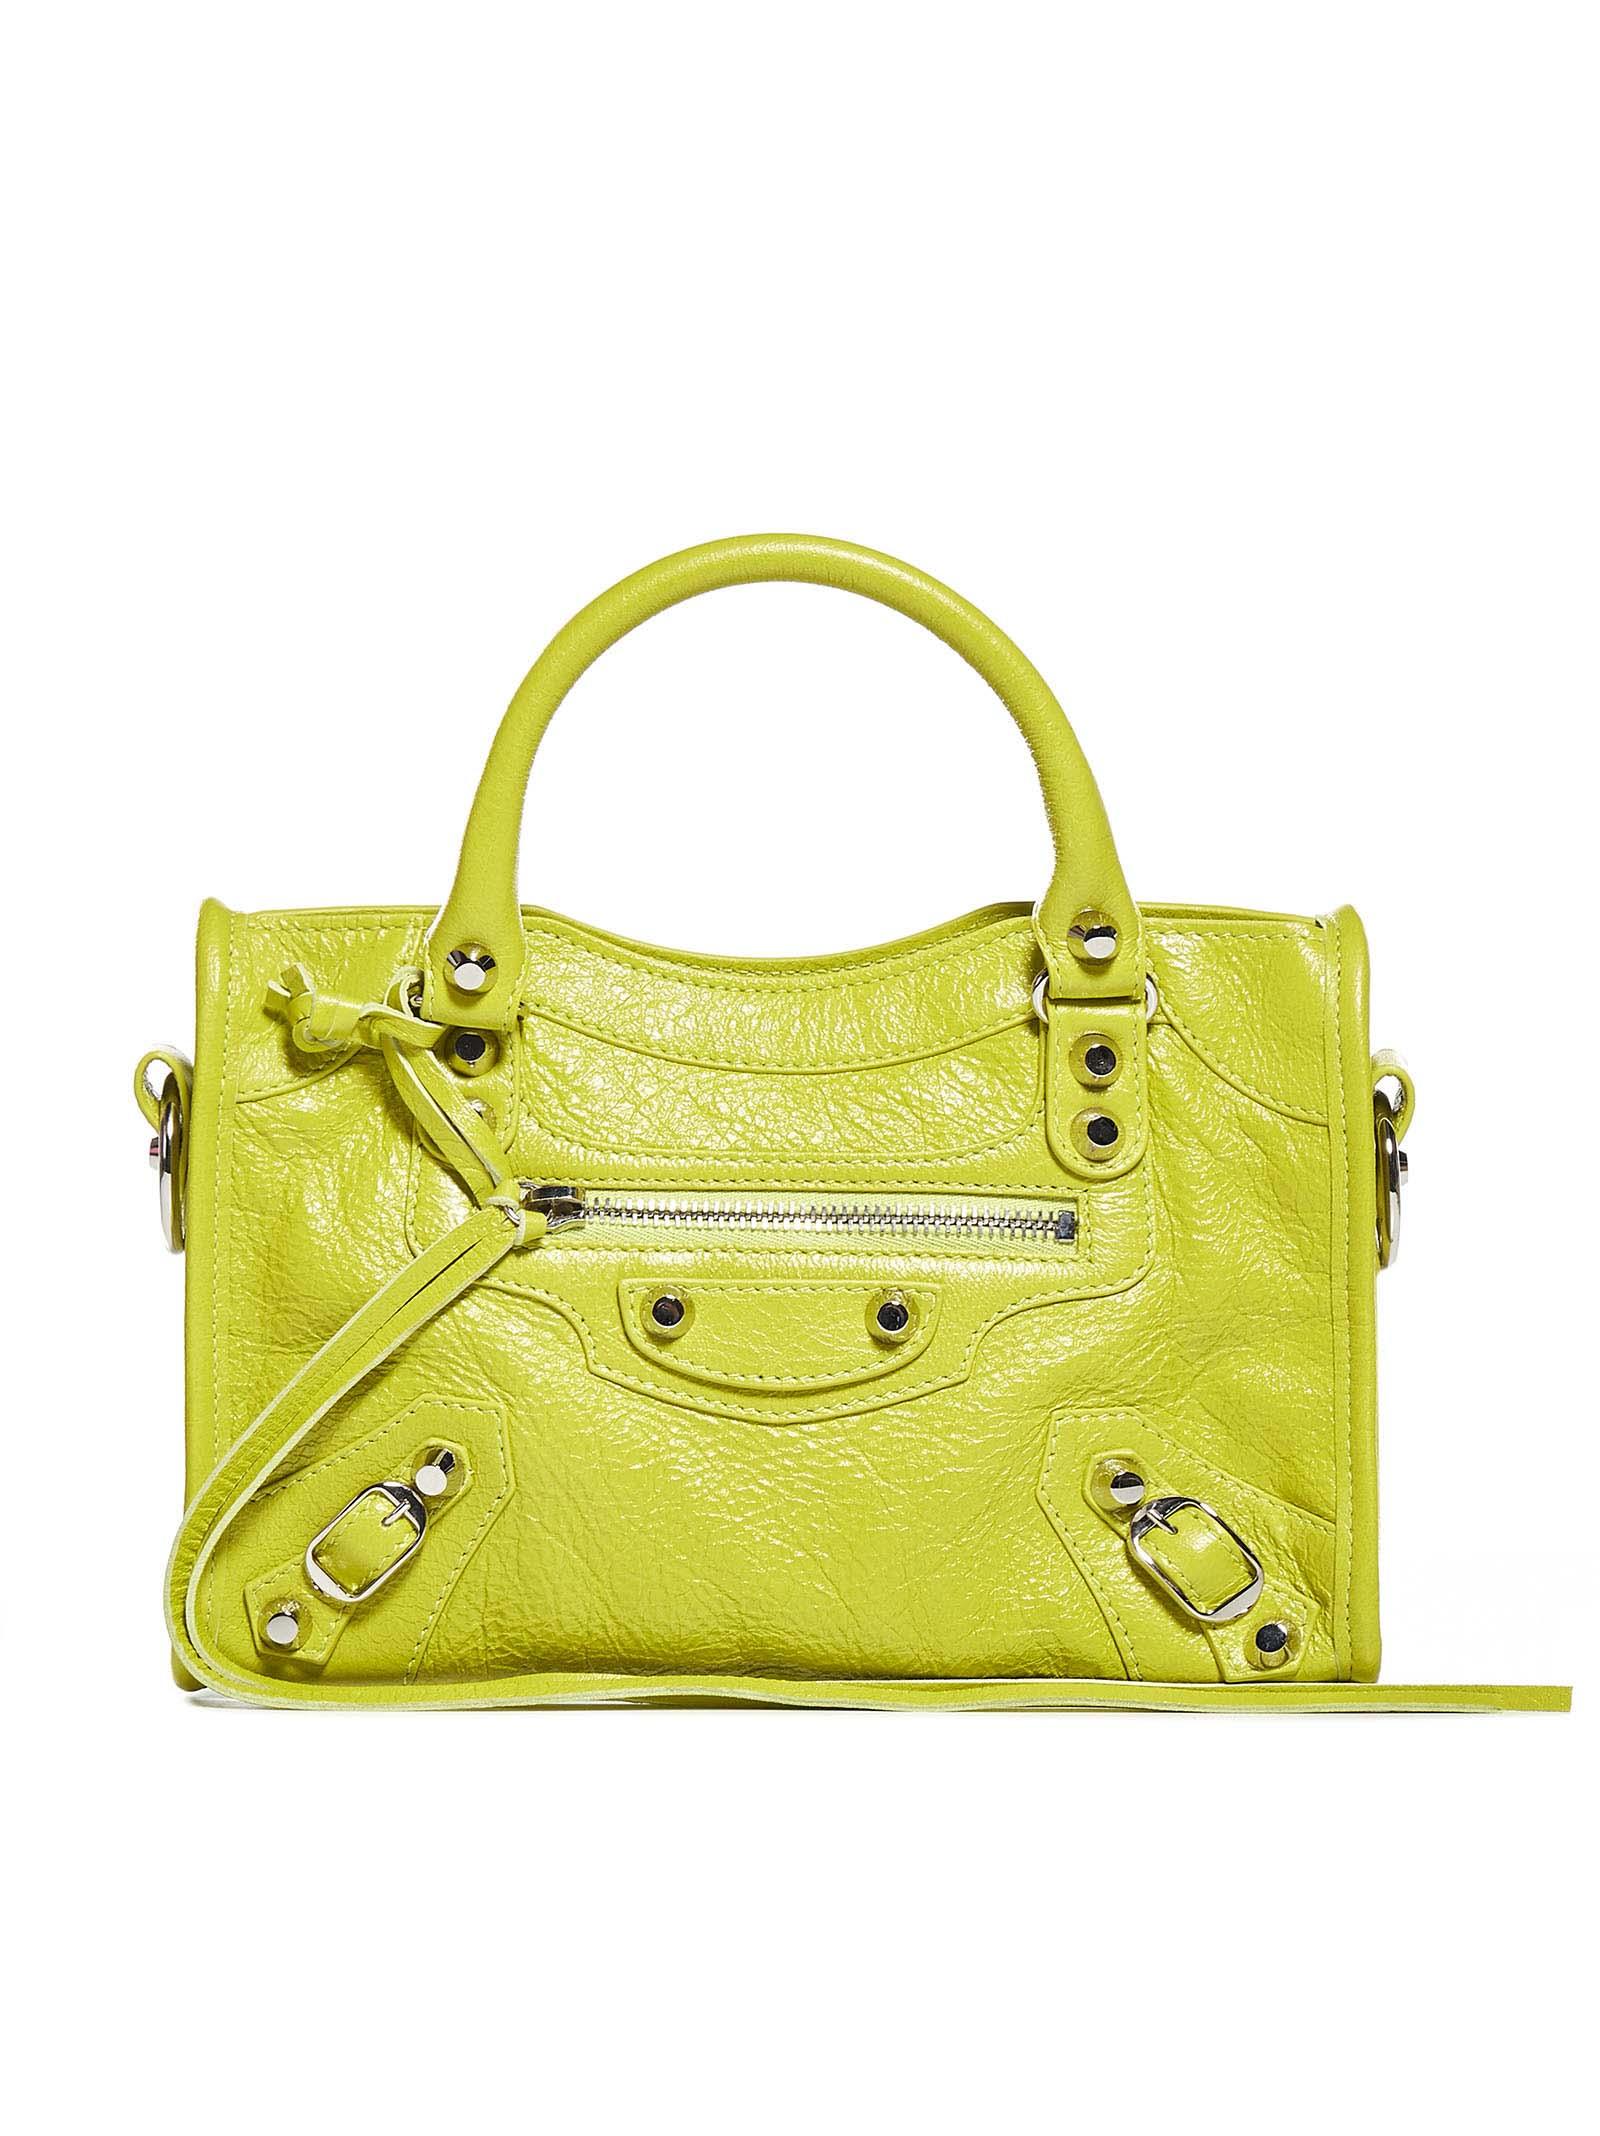 Balenciaga Mini Leather Bag in Yellow |